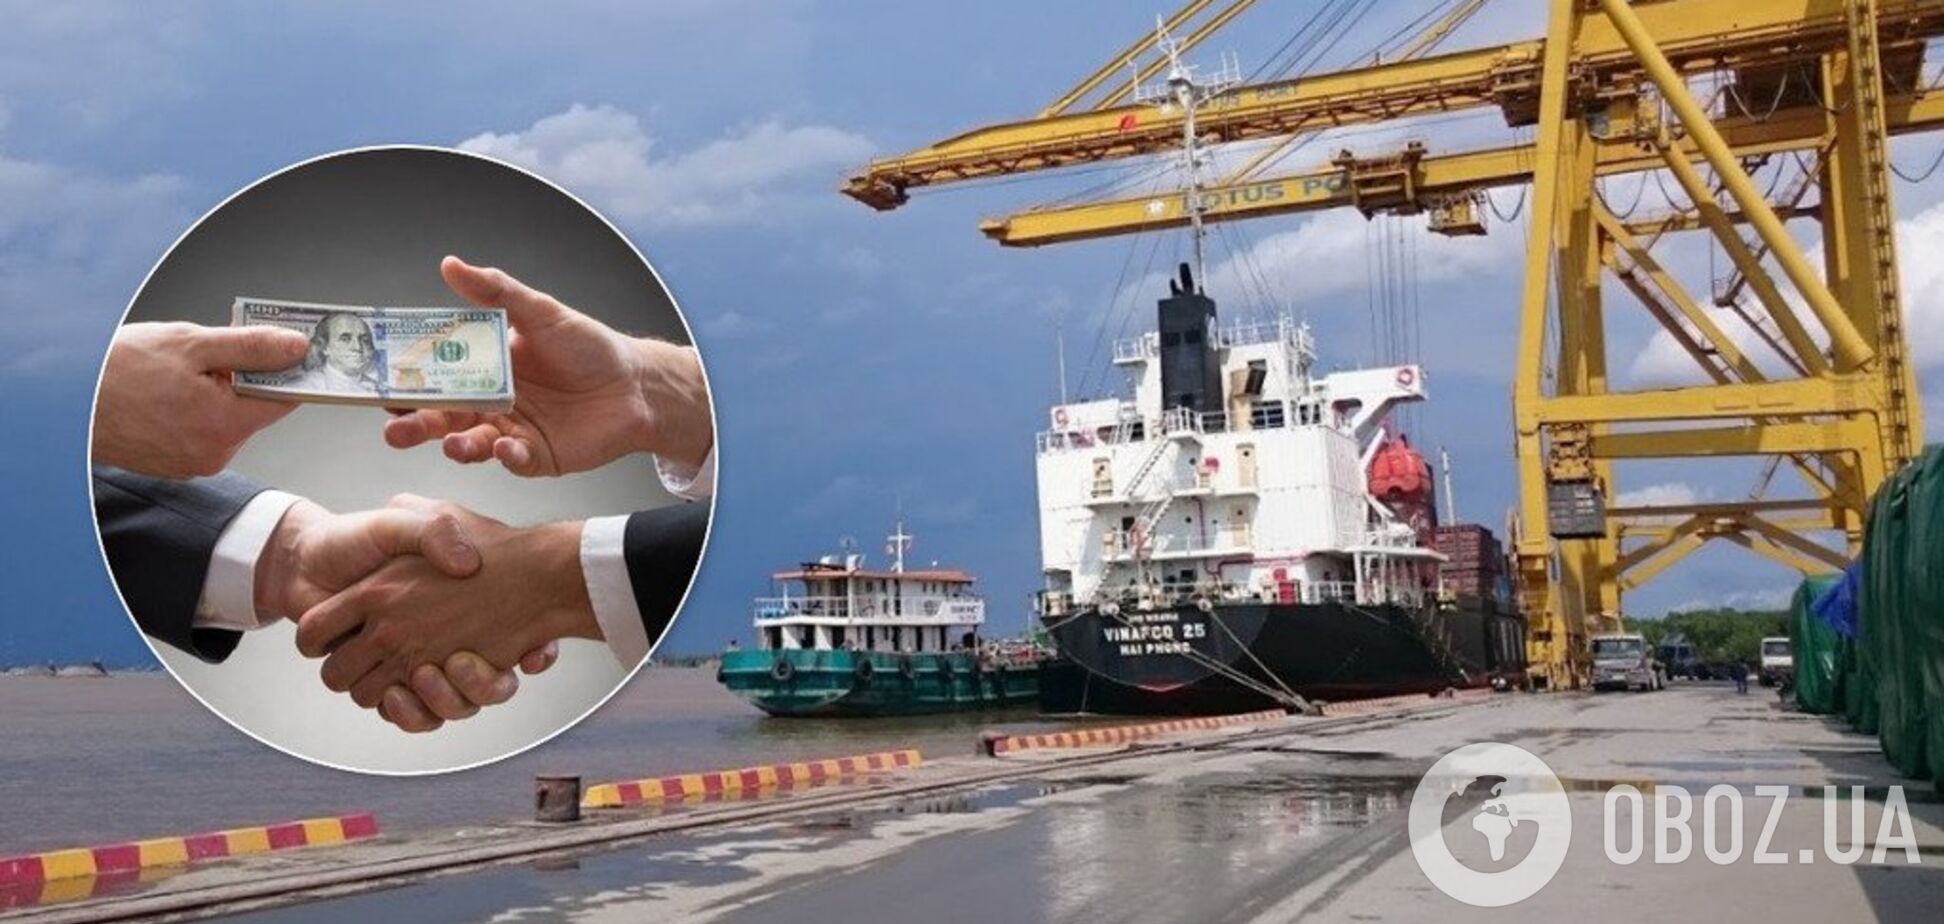 'Виводили в офшор мільйони': Лавренюк розповів, як чиновники організували корупцію у порту 'Лотос'